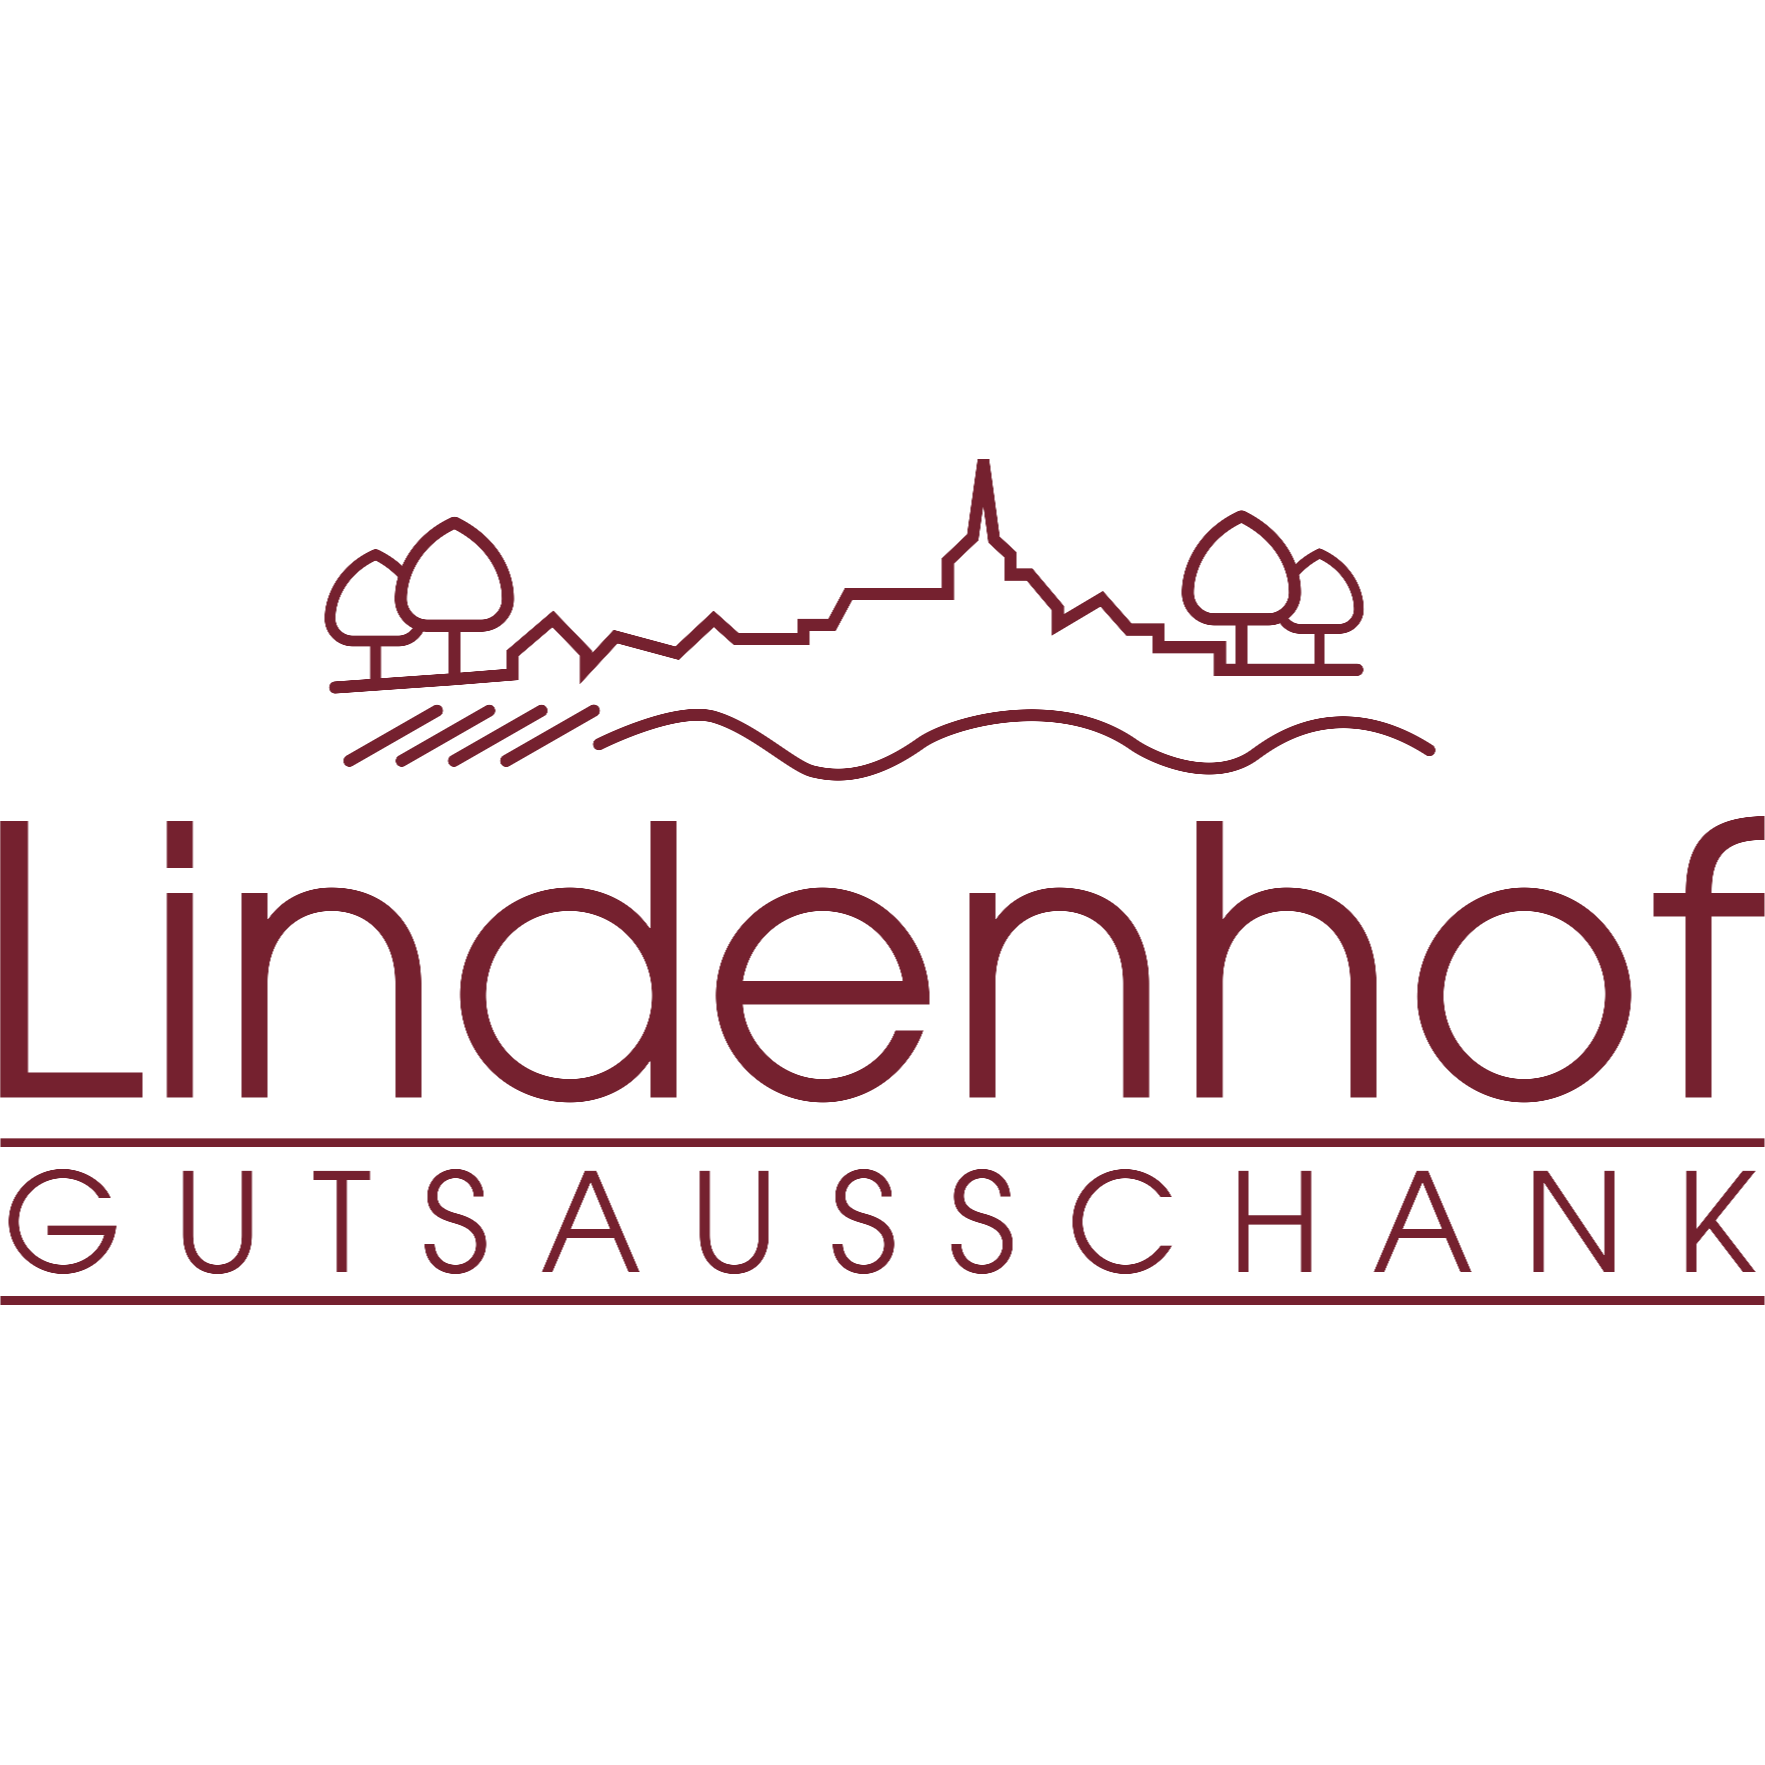 Logo Gutsausschank Lindenhof Alfons Petry